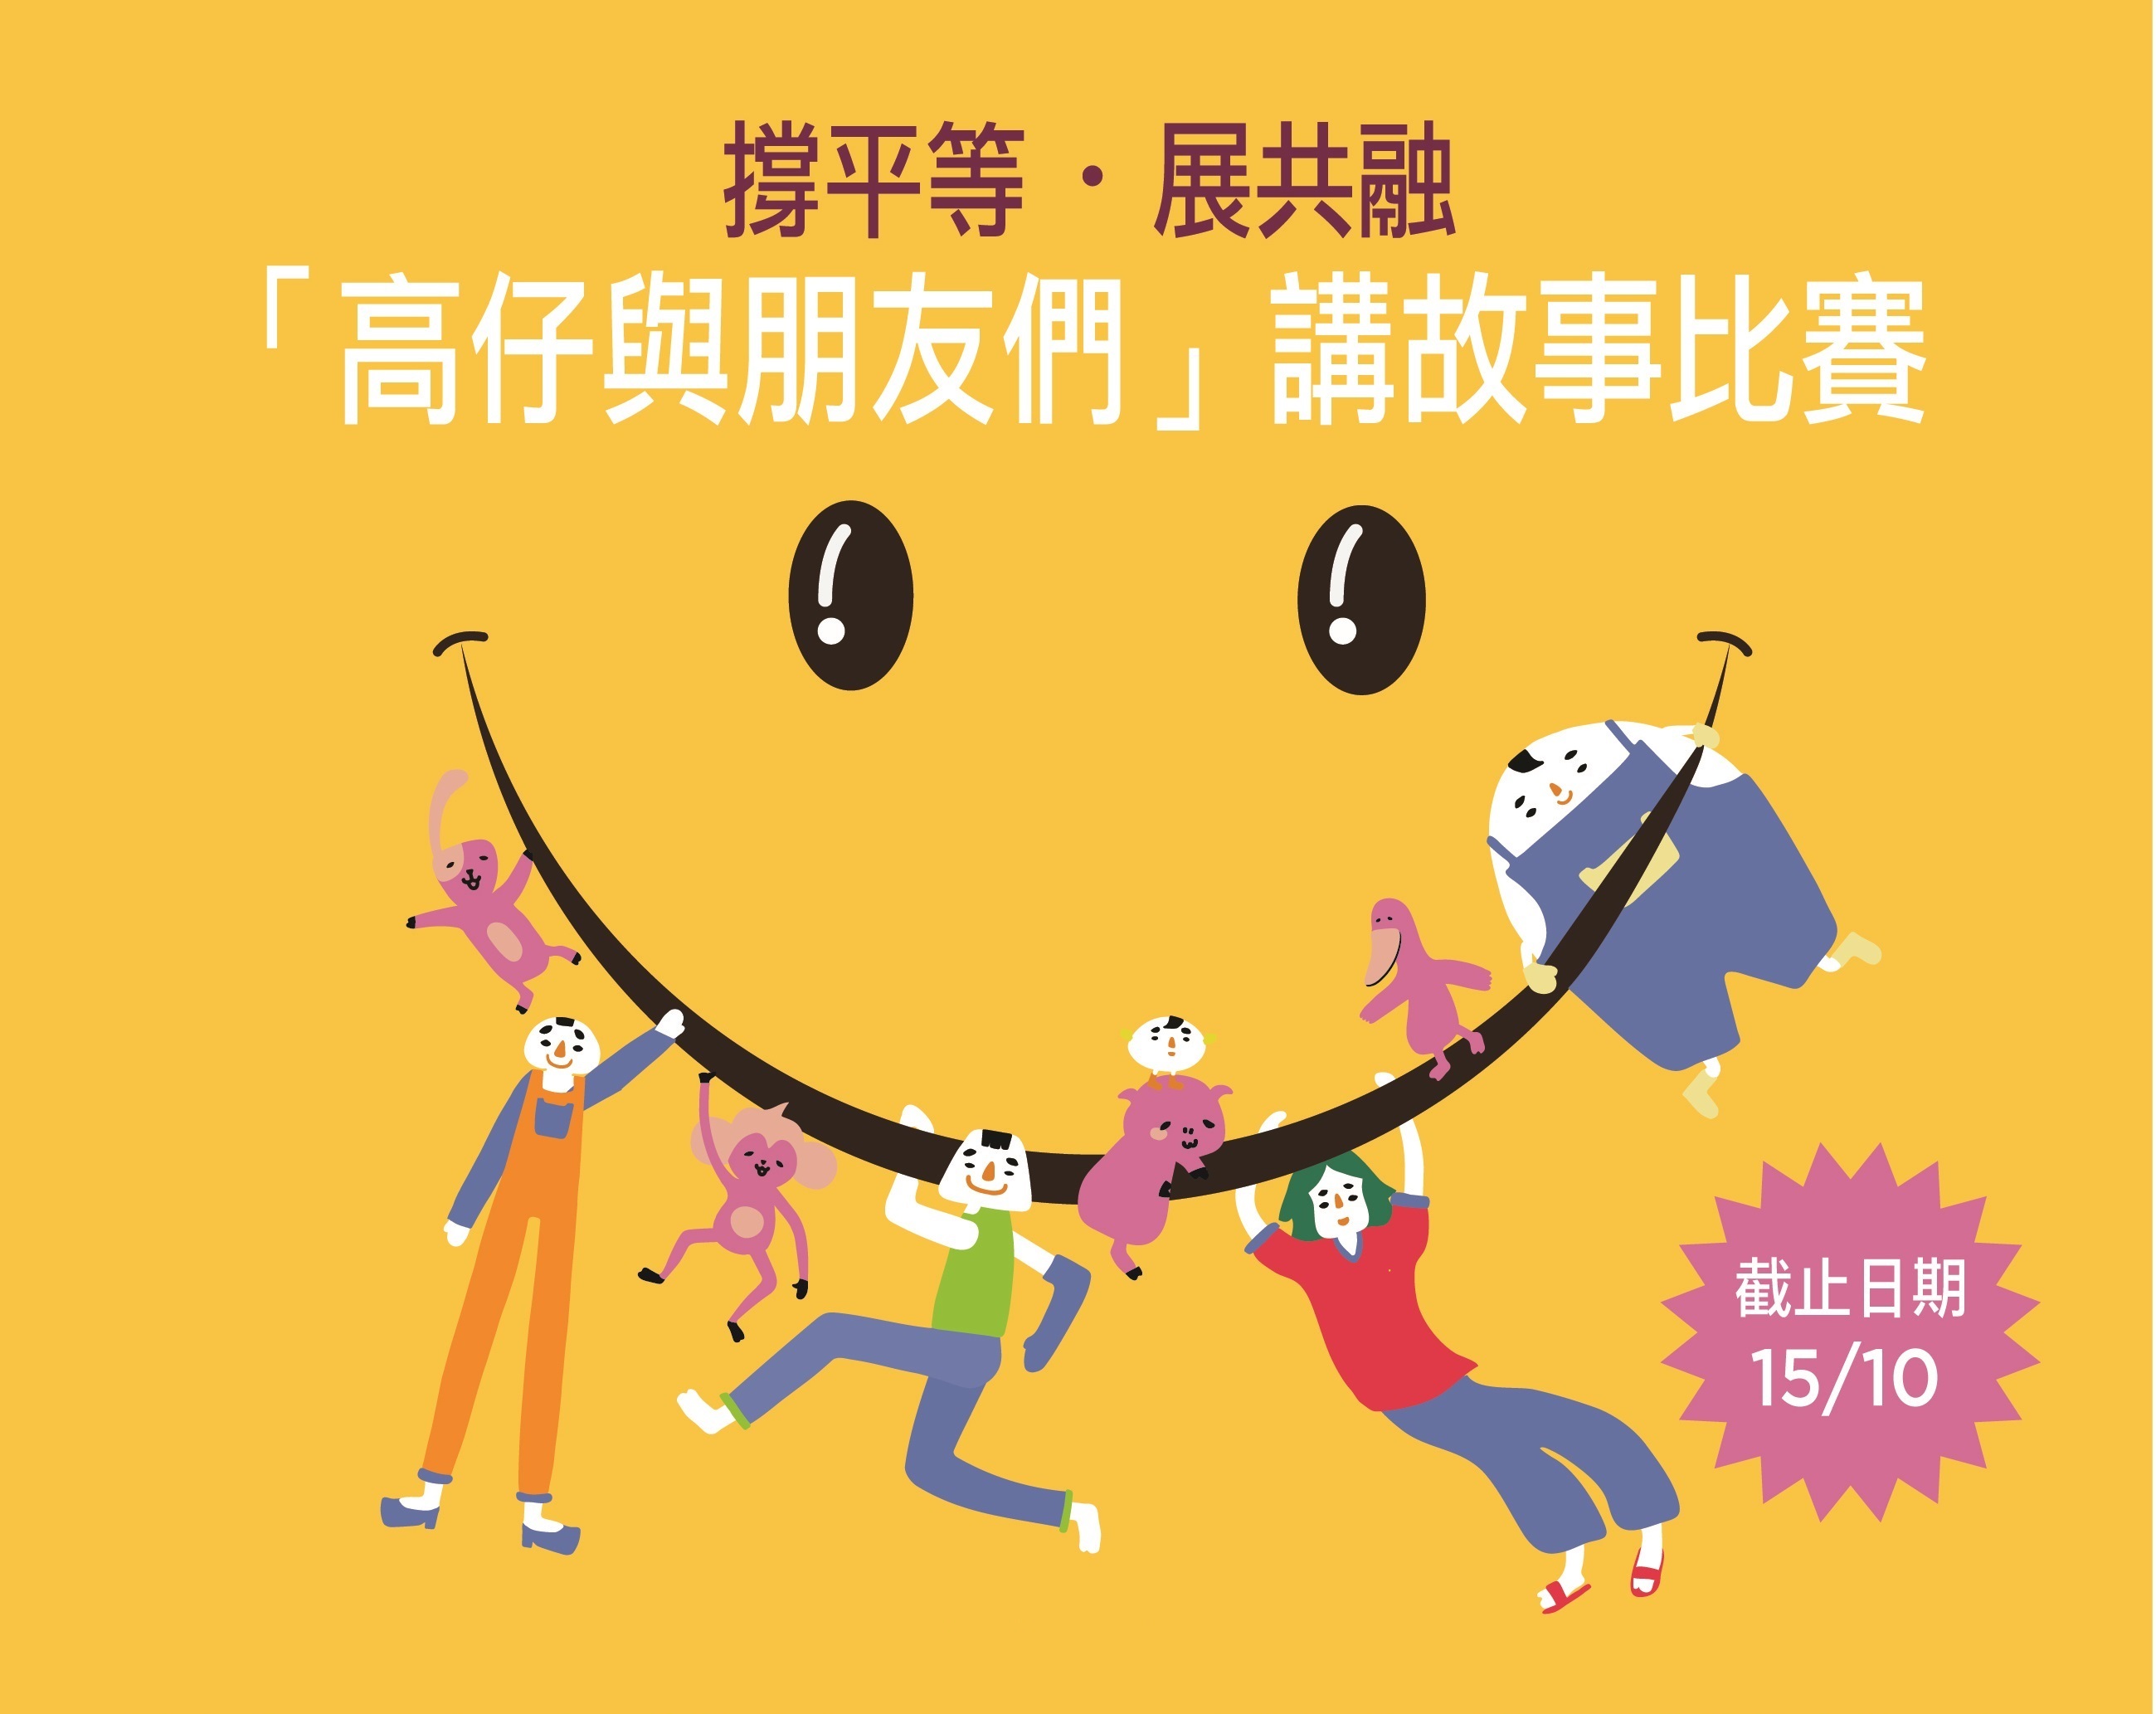 比賽宣傳圖片，背景為鮮黃色，中間是特大的哈哈笑圖案，高仔和他的朋友們懸掛在微曲的嘴巴上